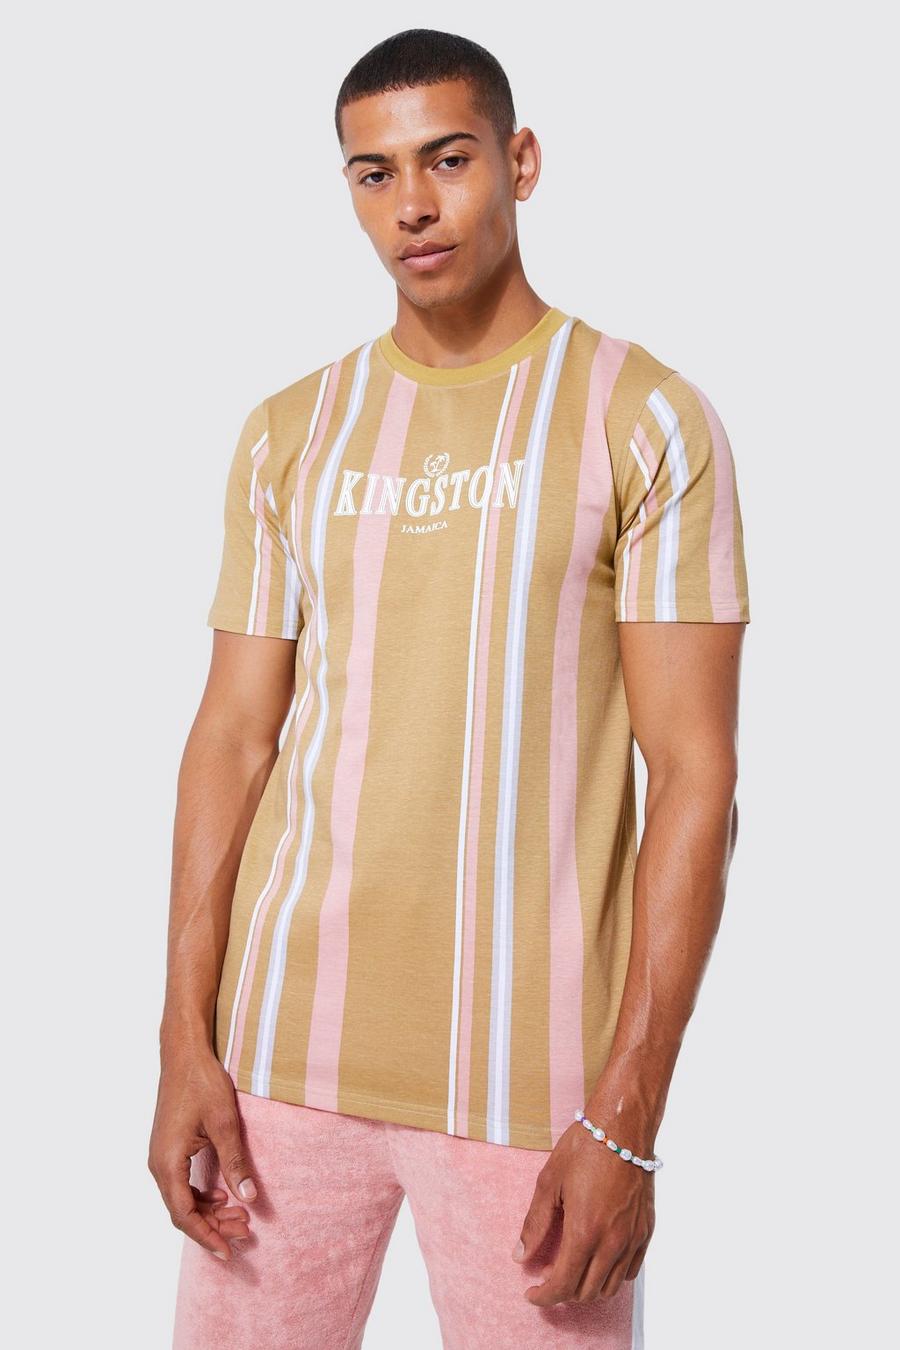 Camiseta ajustada de rayas con estampado de Kingston, Stone beige